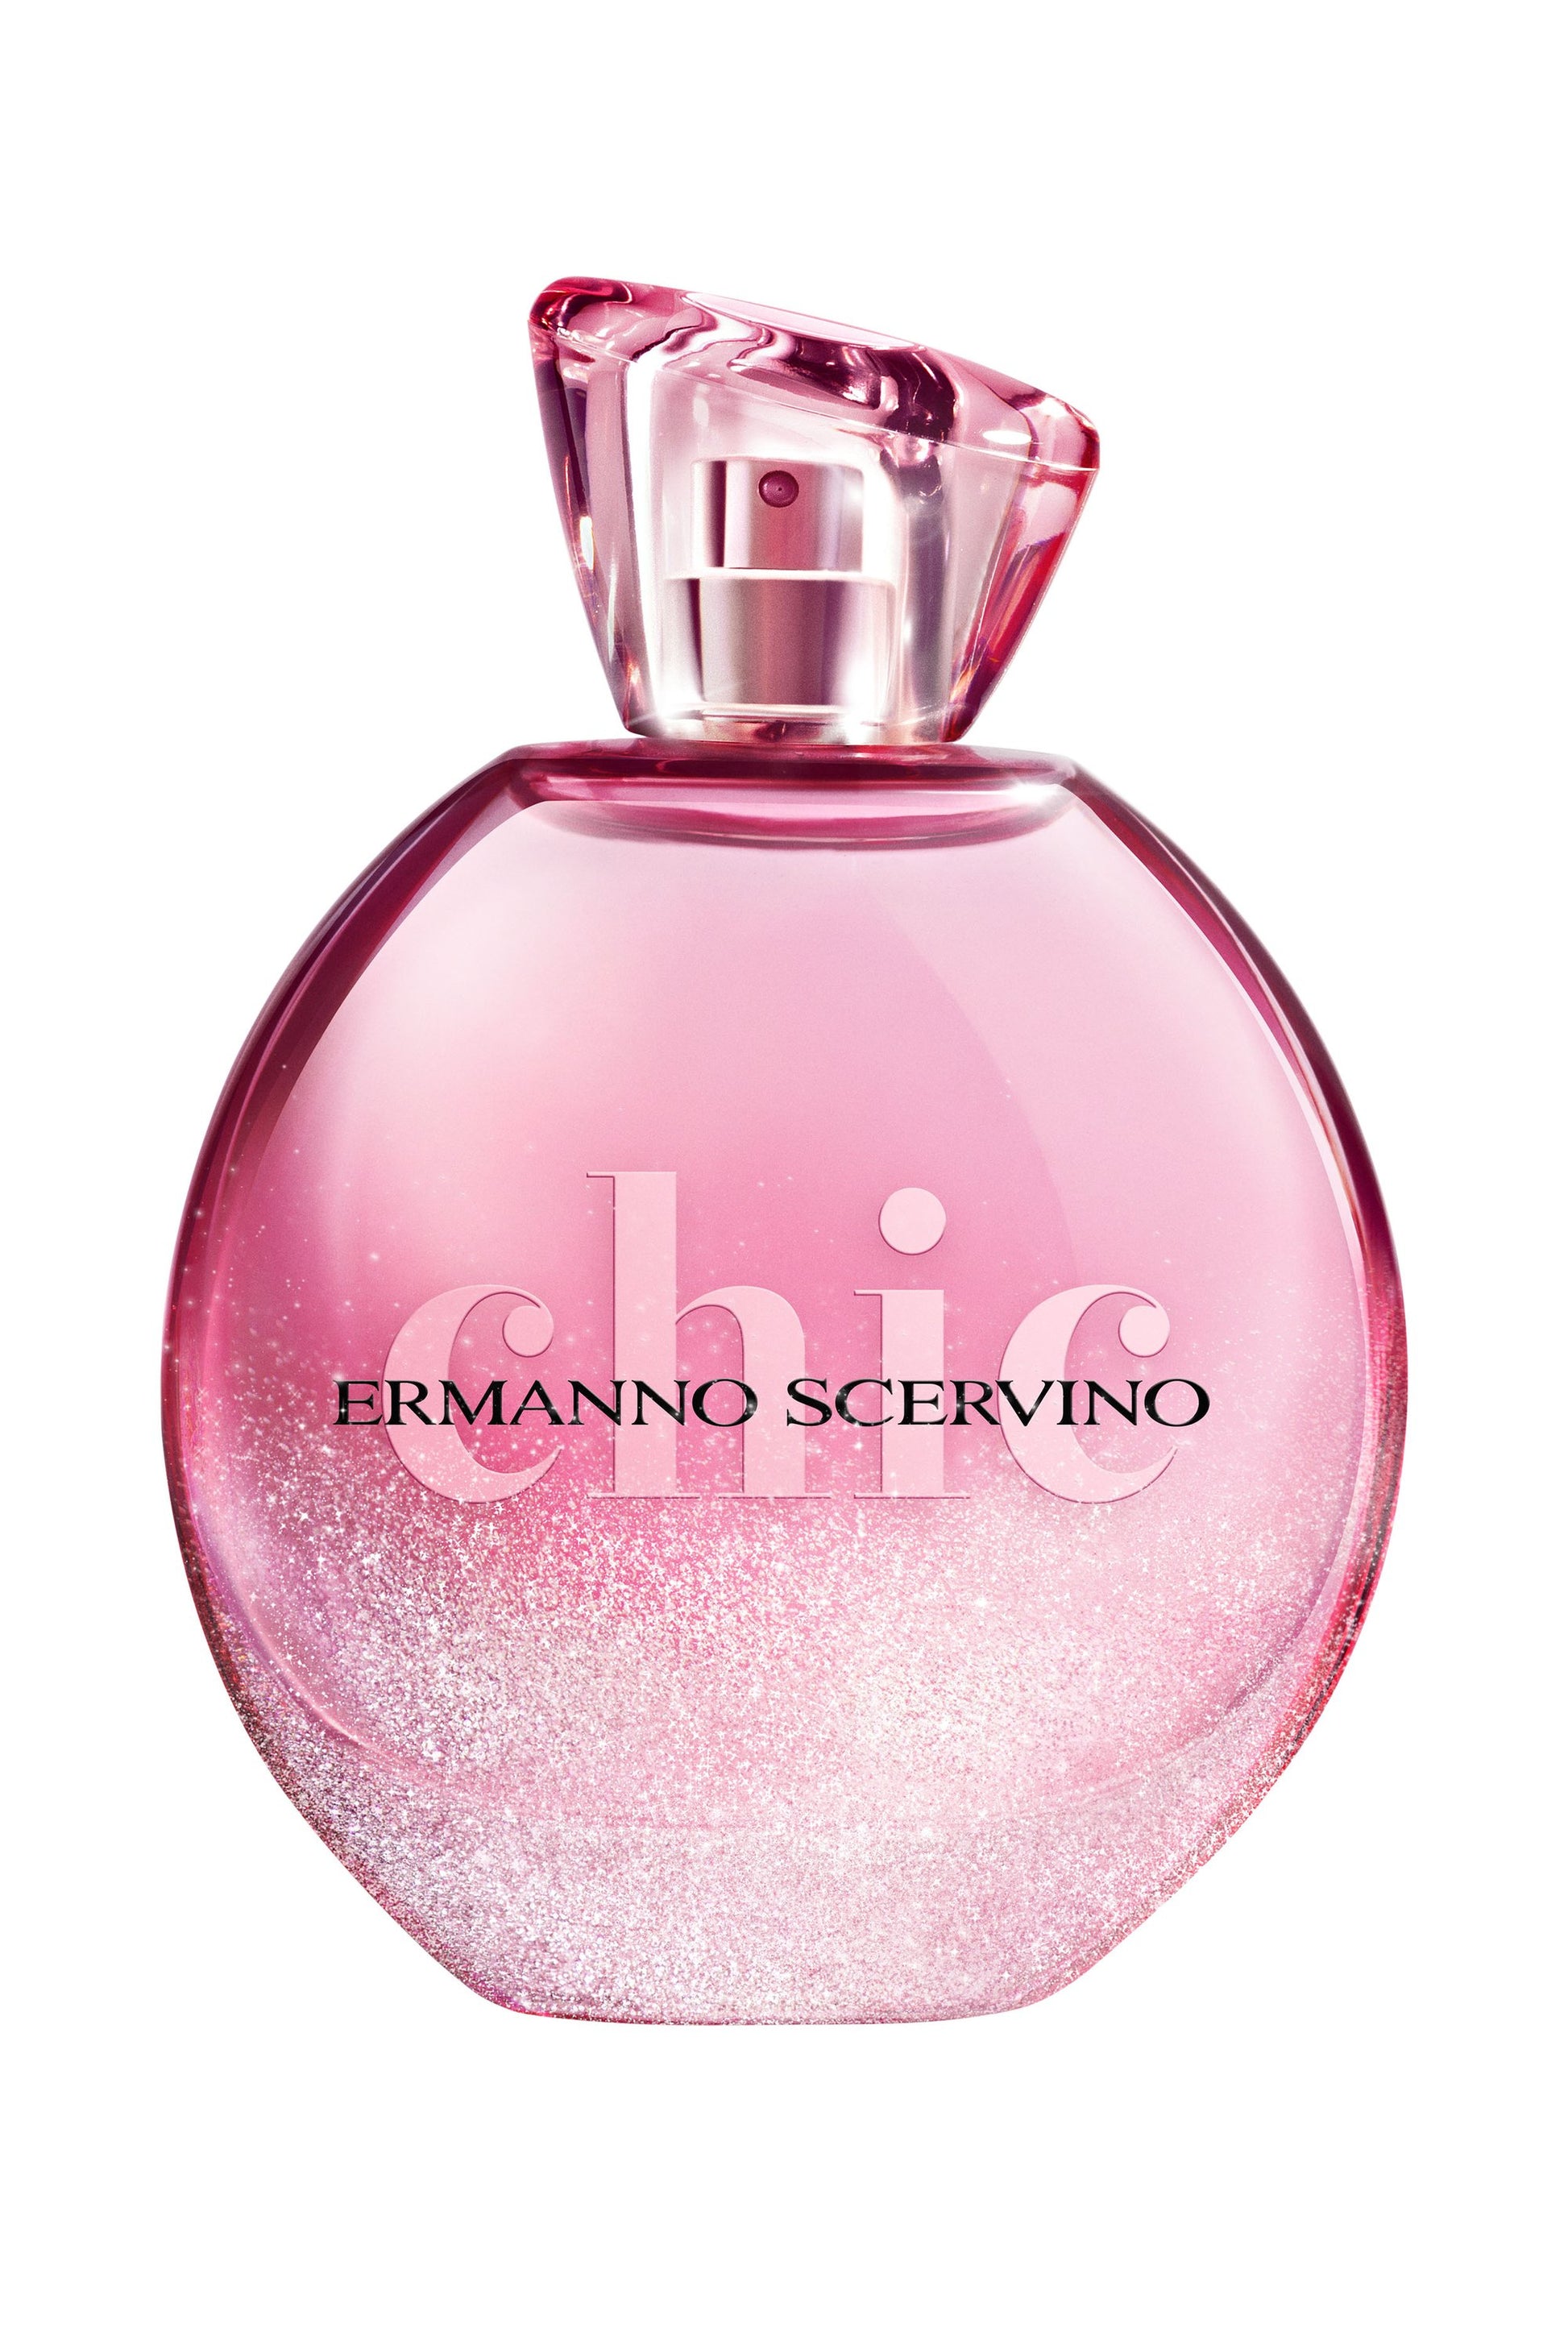 Ermanno Scervino Capsule Collection Chic Eau de Parfum | RossoLacca